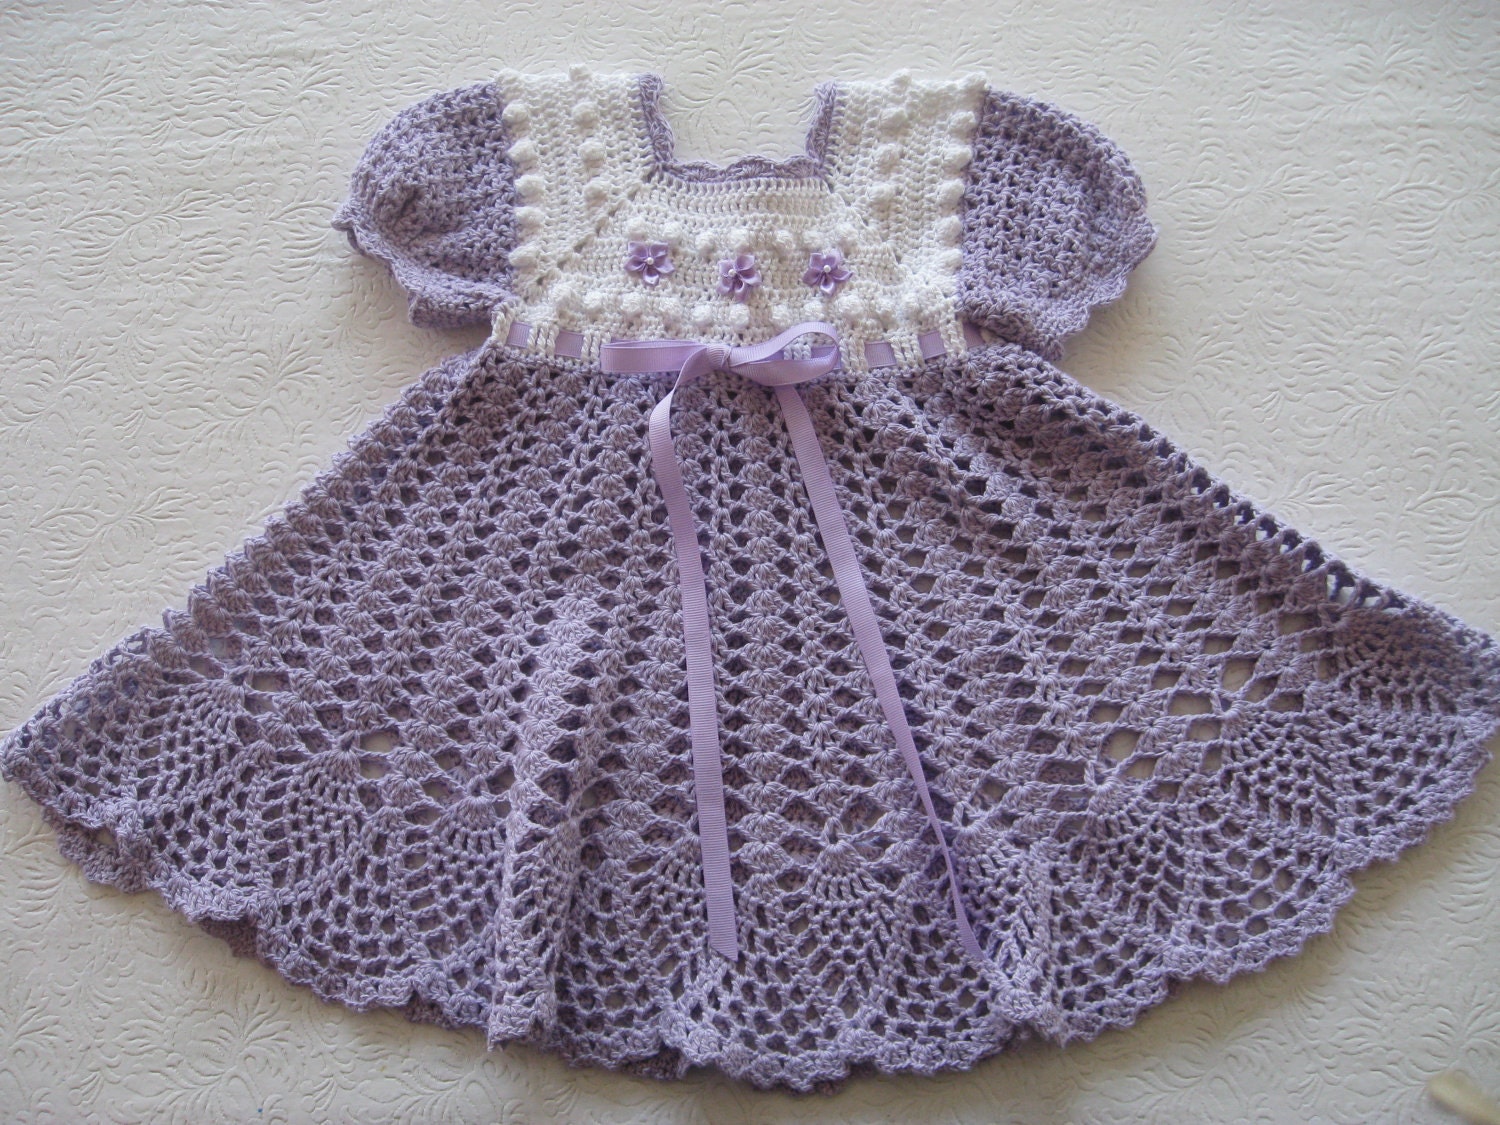            Crochet dresses